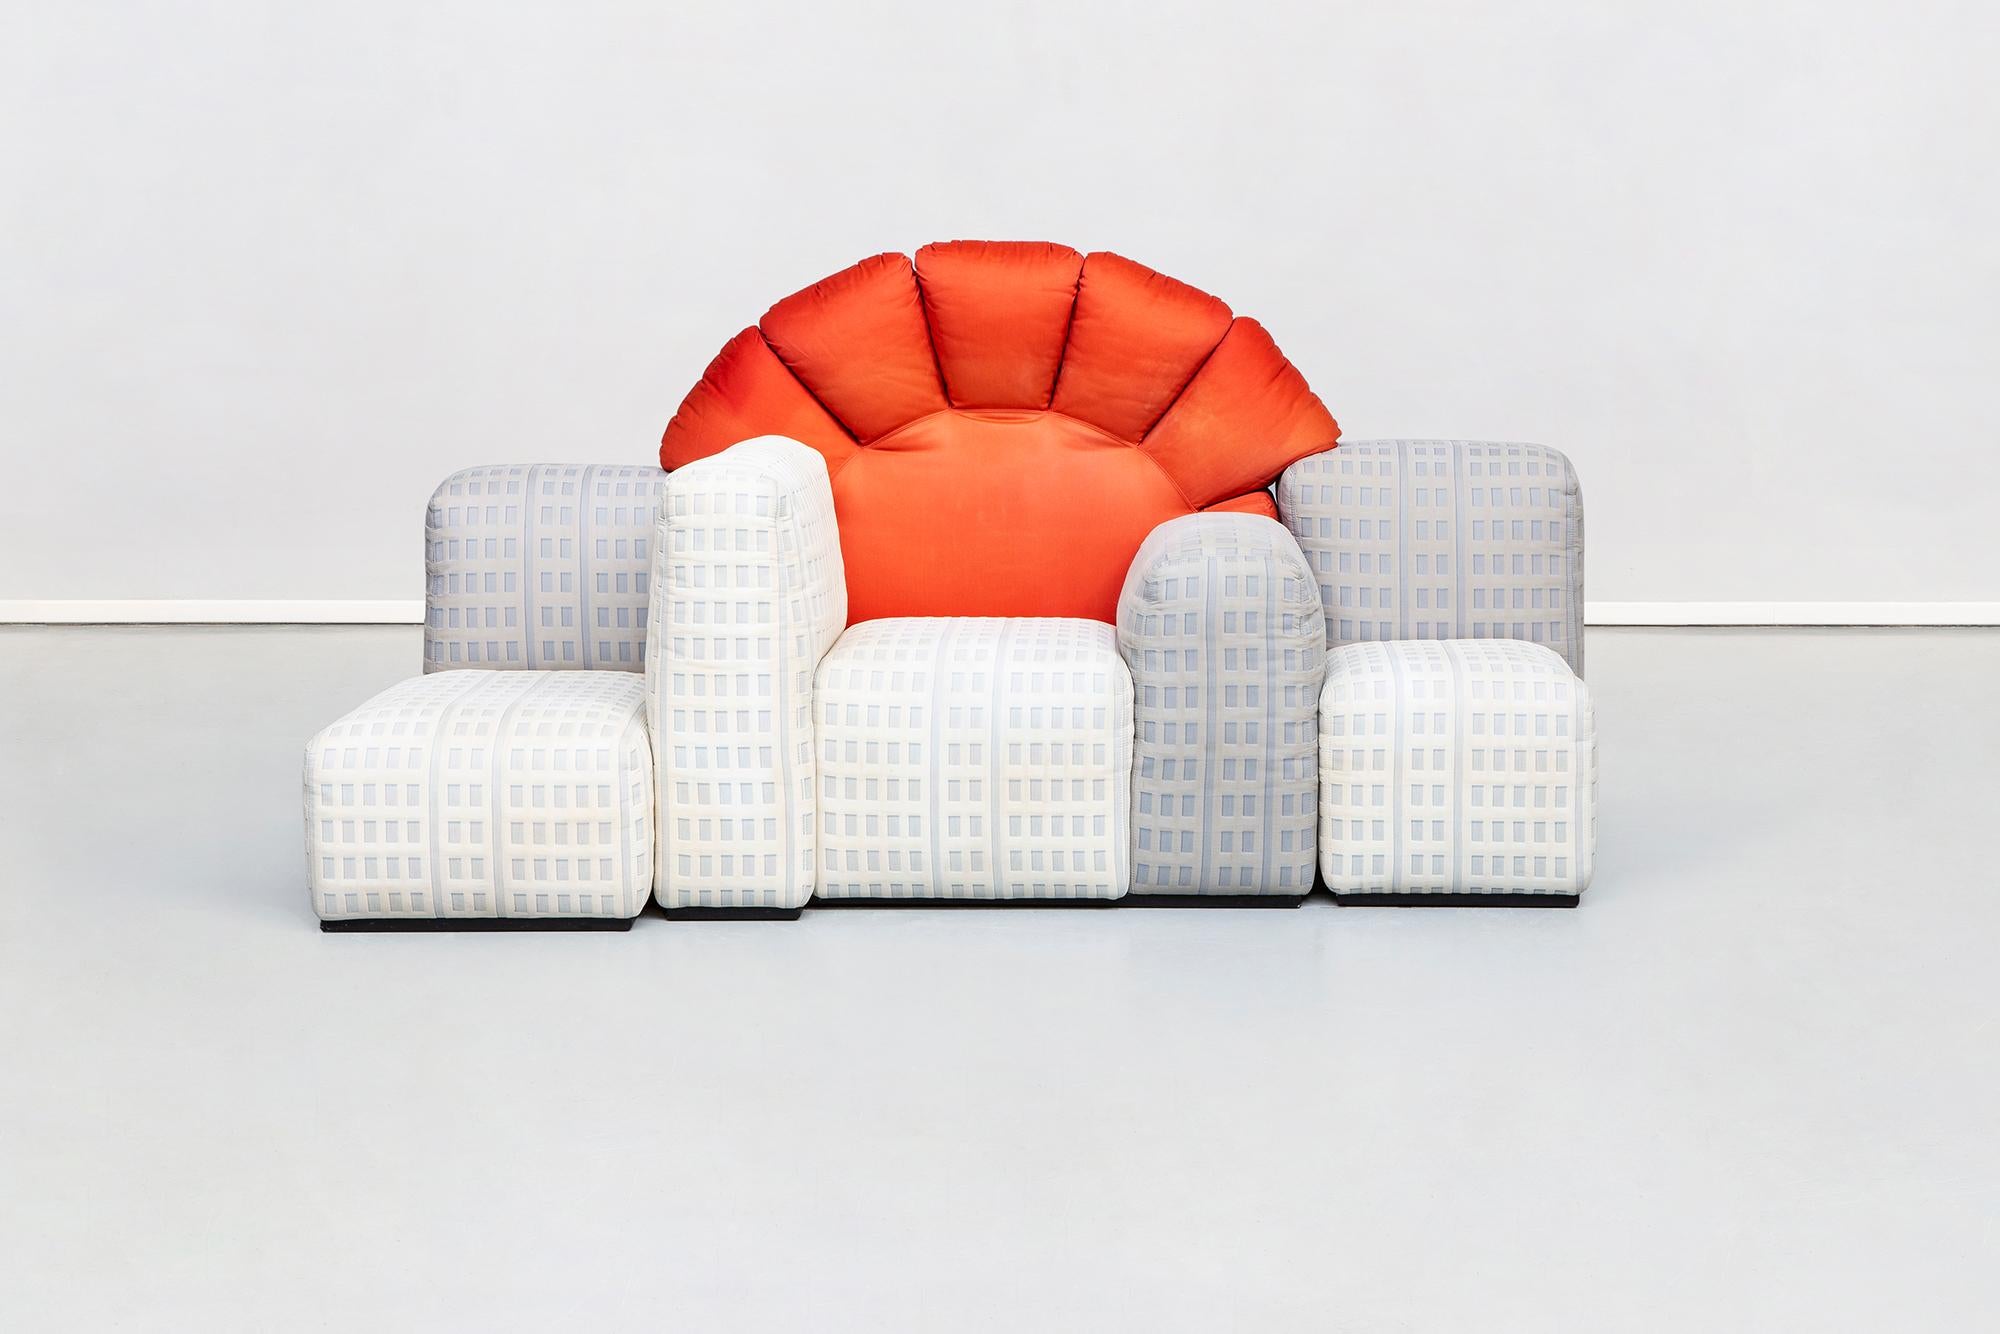 Tramonto, ein modulares New Yorker Sofa, entworfen von Gaetano Pesce für Cassina, 1984
Dies ist ein authentisches Meisterwerk des unkonventionellen italienischen Designers Gaetano Pesce aus dem Jahr 1984, das von Cassina in einer Auflage von nur 42